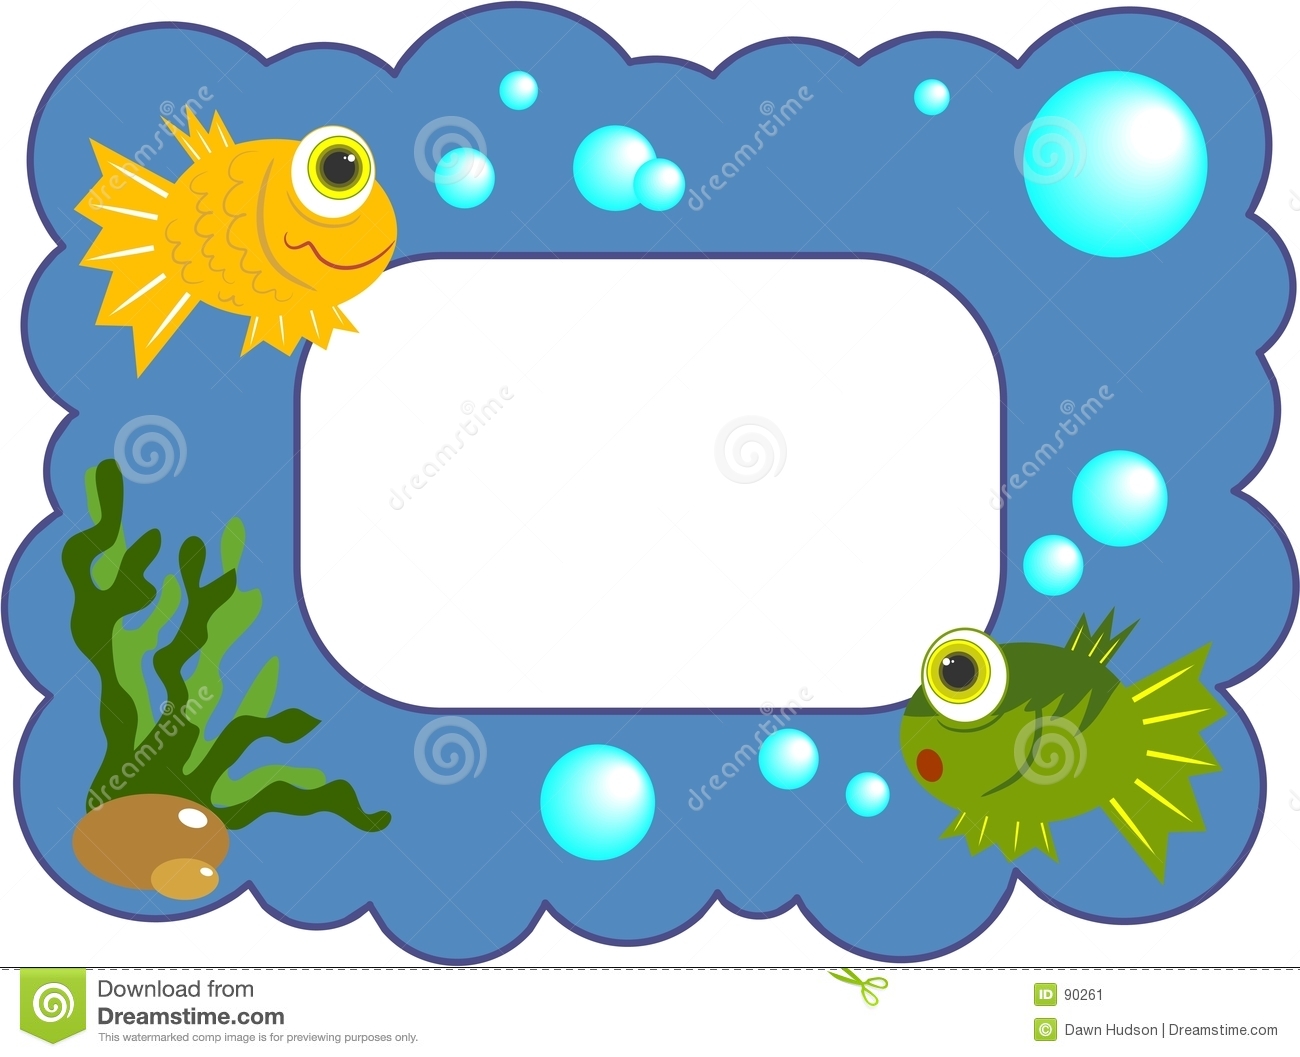 Fishy Frame Stock Image   Image  90261